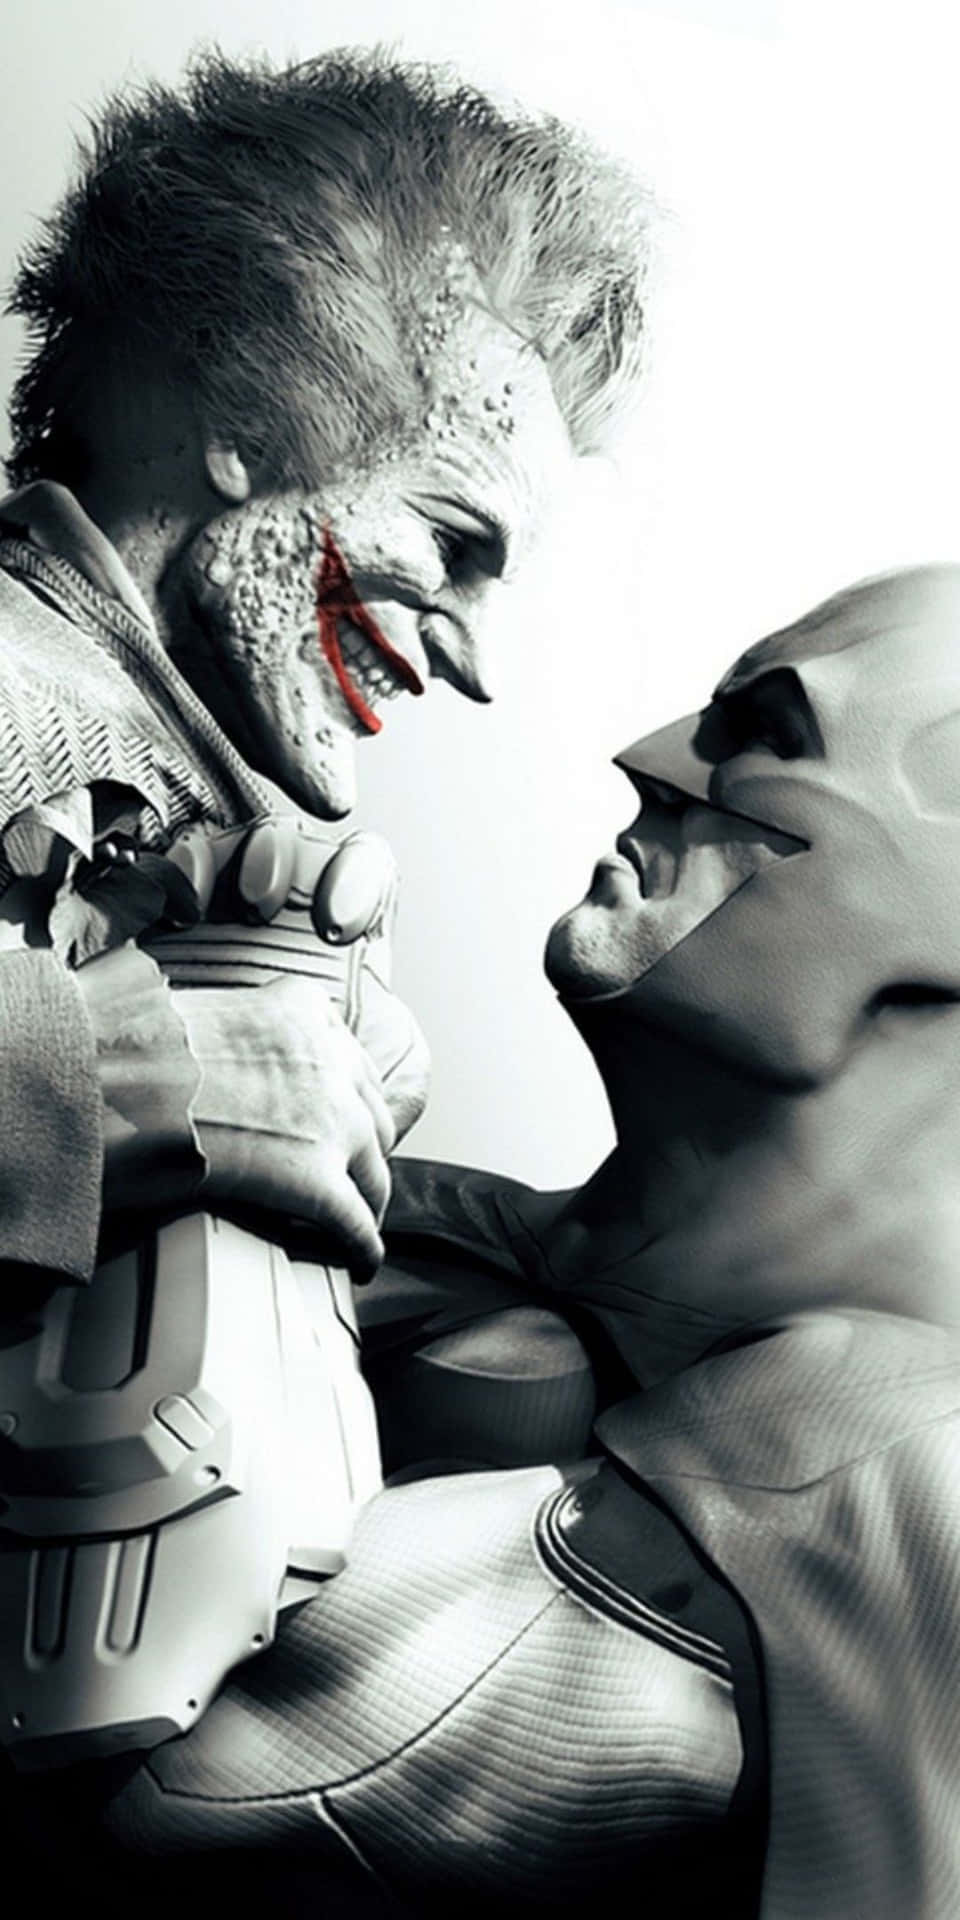 Pixel3 Joker Y Batman Arkham City Videojuego Fondo En Blanco Y Negro.